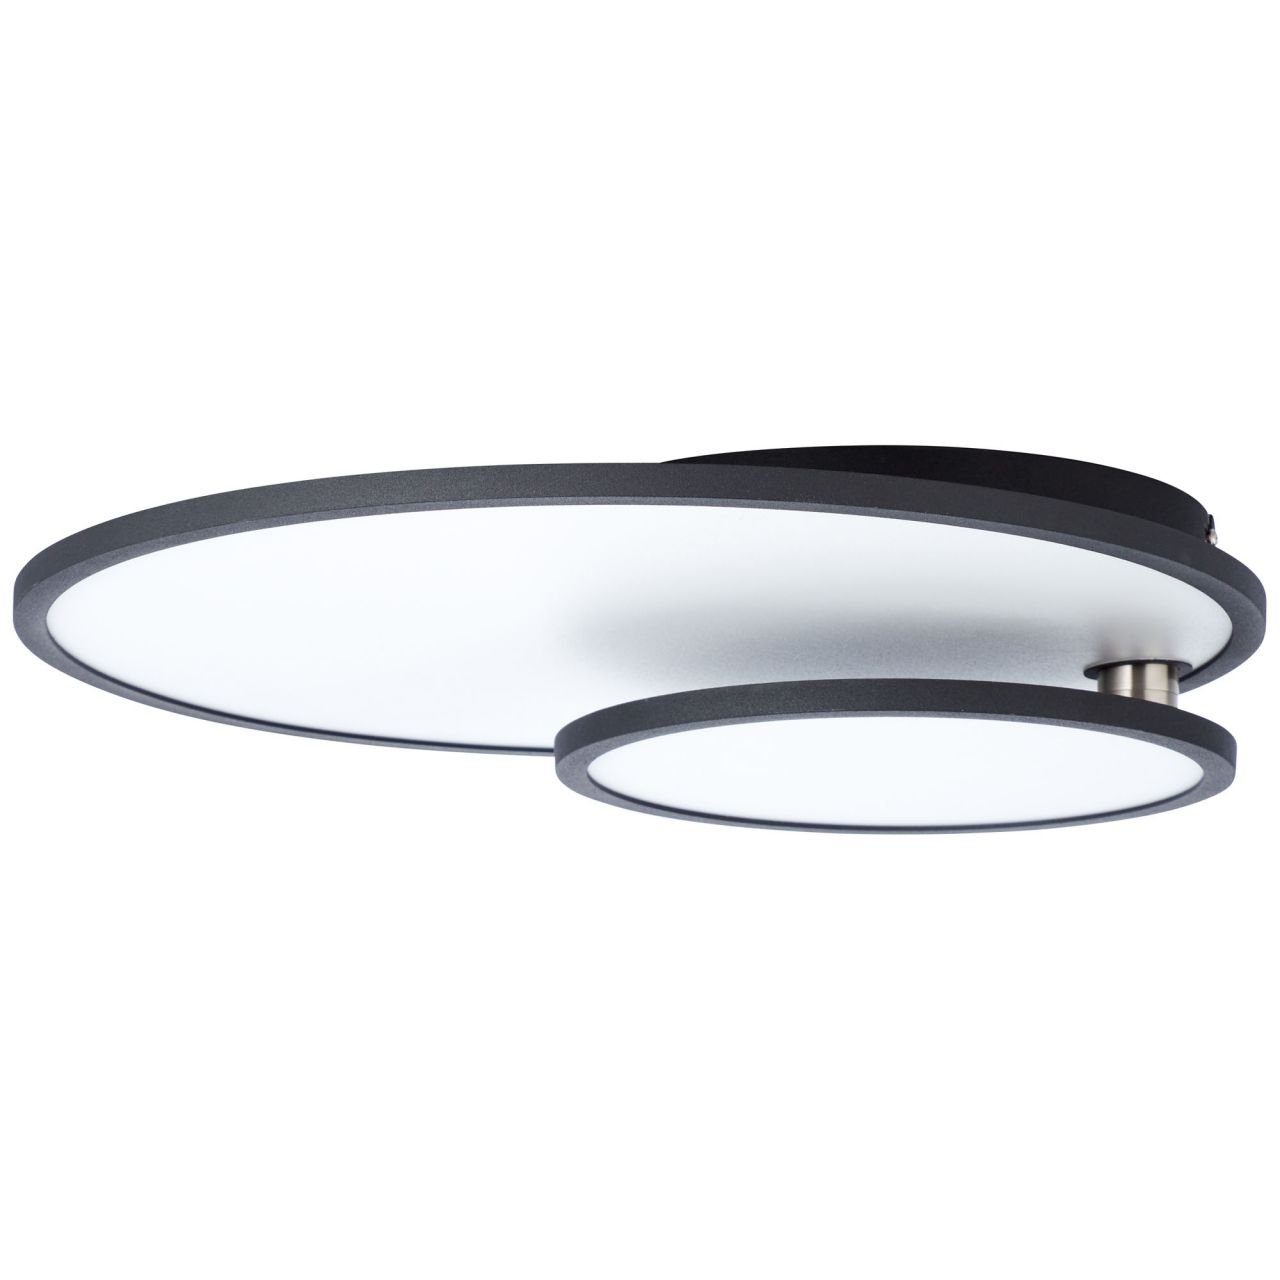 Lampe Bility 3000K, Brilliant easyDim Deckenaufbau-Paneel 1x schwarz/weiß Bility, 61x45cm LED Aufbauleuchte